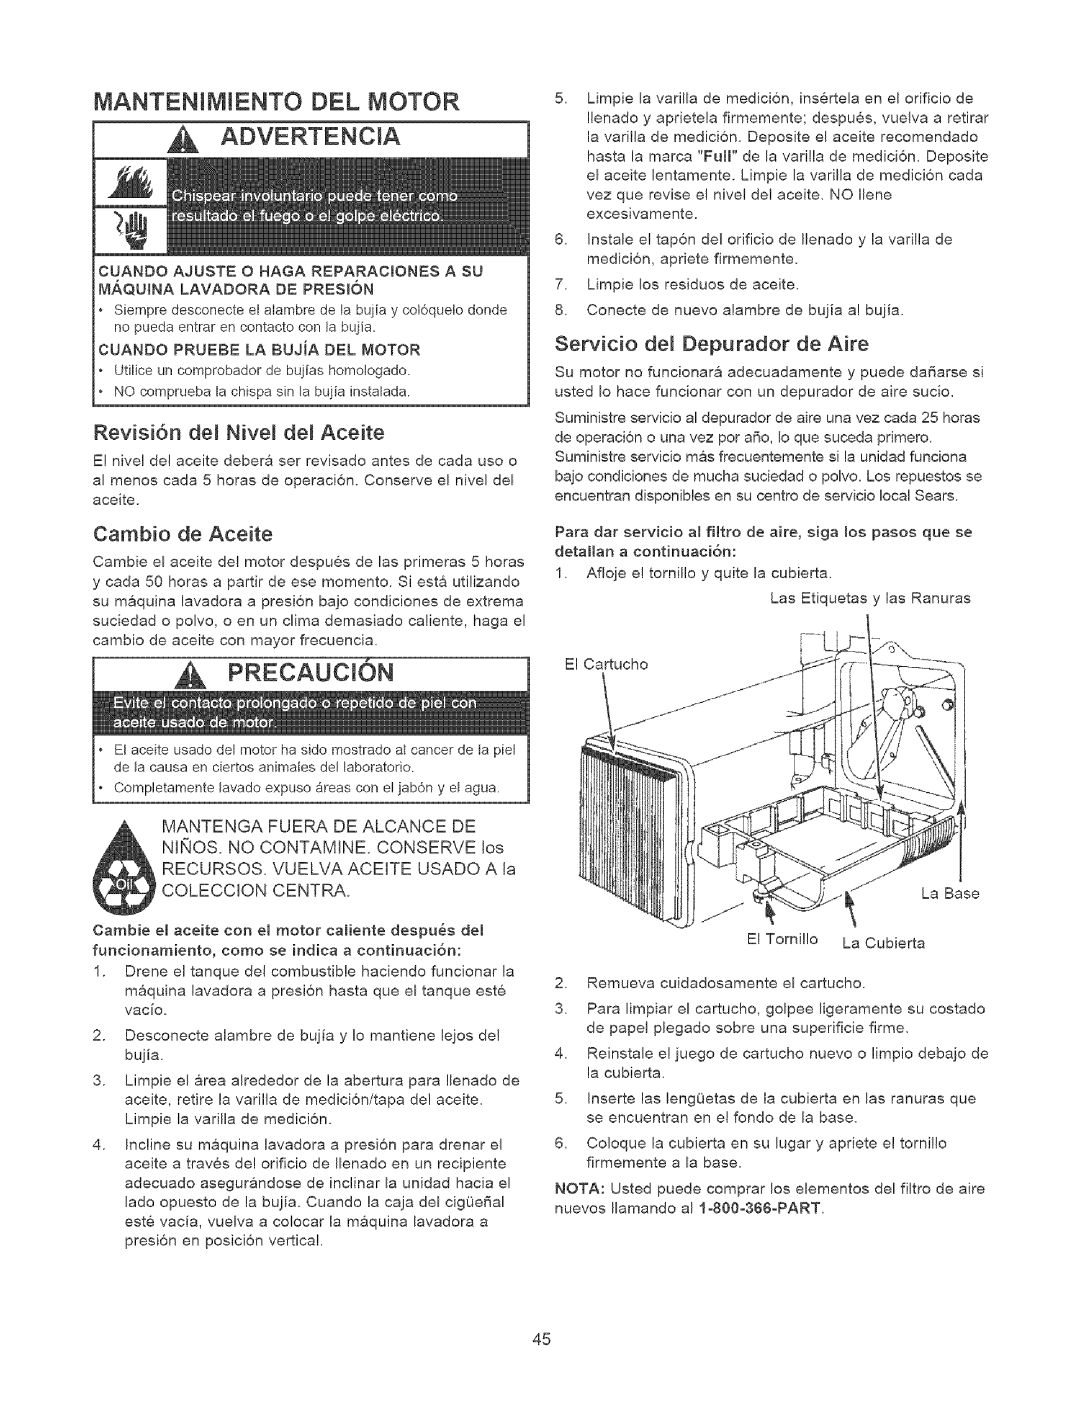 Craftsman 580.7524 owner manual Mantenim Ento Del Motor, Revisi6n de_ Nive_ de_ Aceite, Cambio de Aceite 